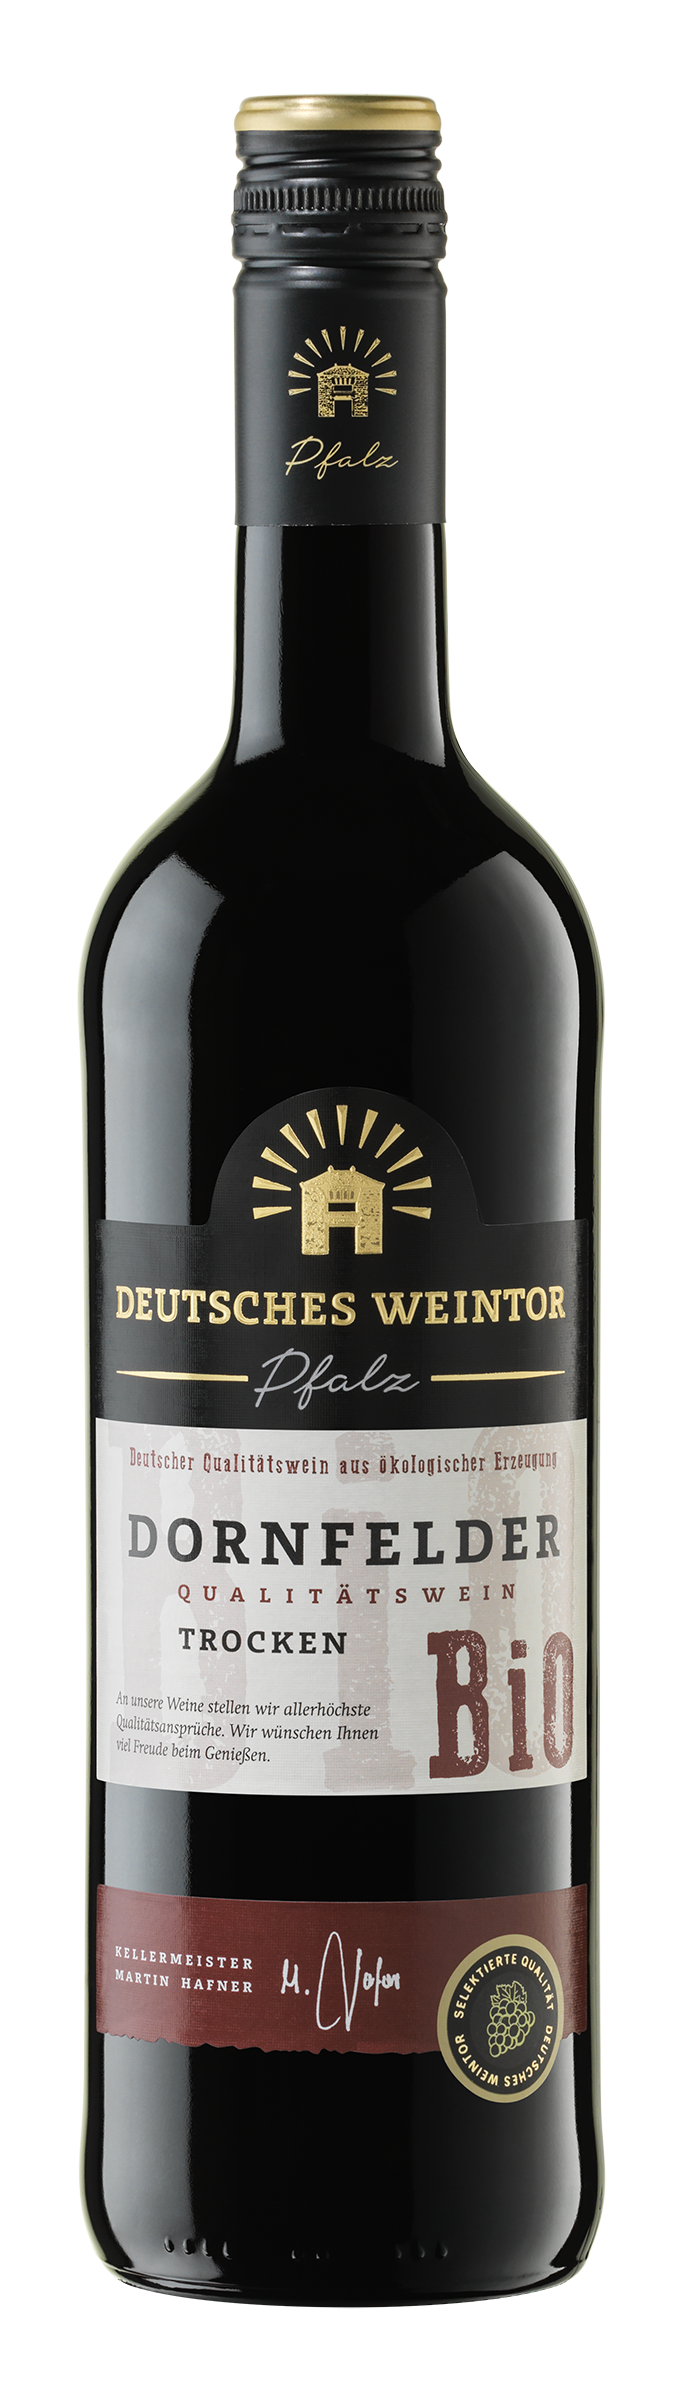 ▻ Weintor | L trocken BIO Deutsches Pfälzer Wein Dornfelder 0,75